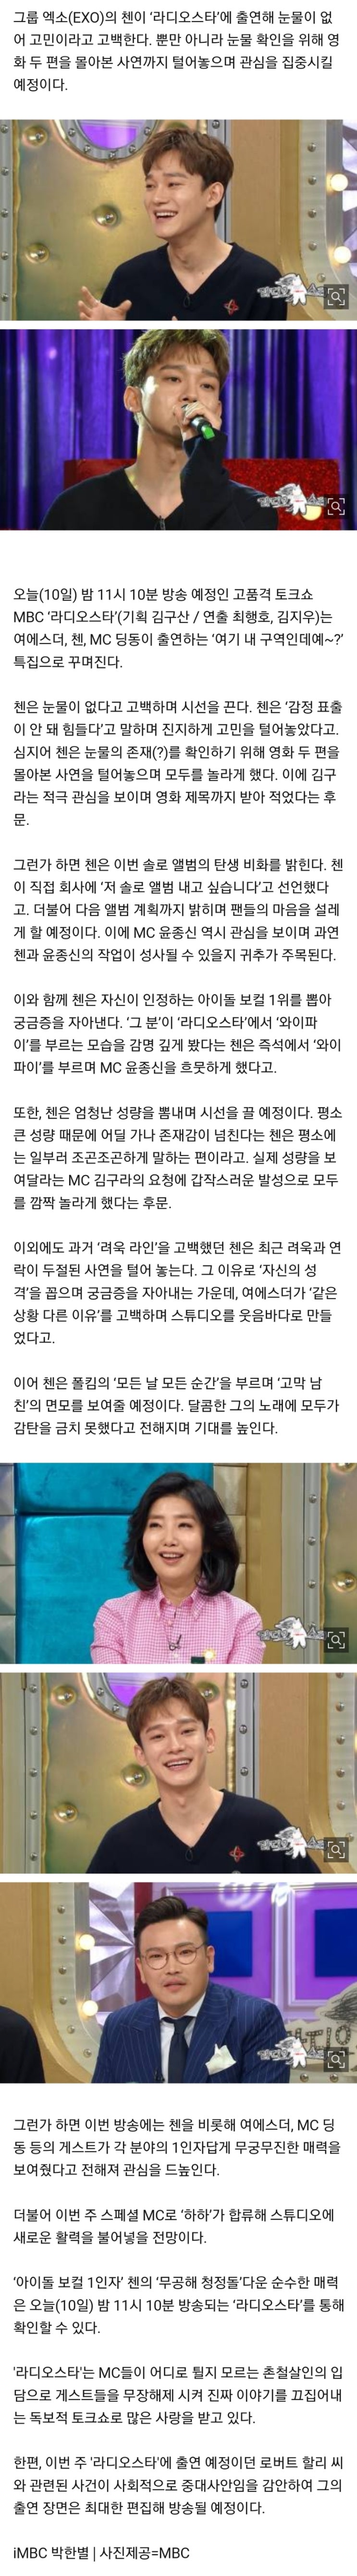 [기사]라디오스타' 엑소 첸의 아이돌 보컬 원픽은? '와이파이' 라이브까지!  